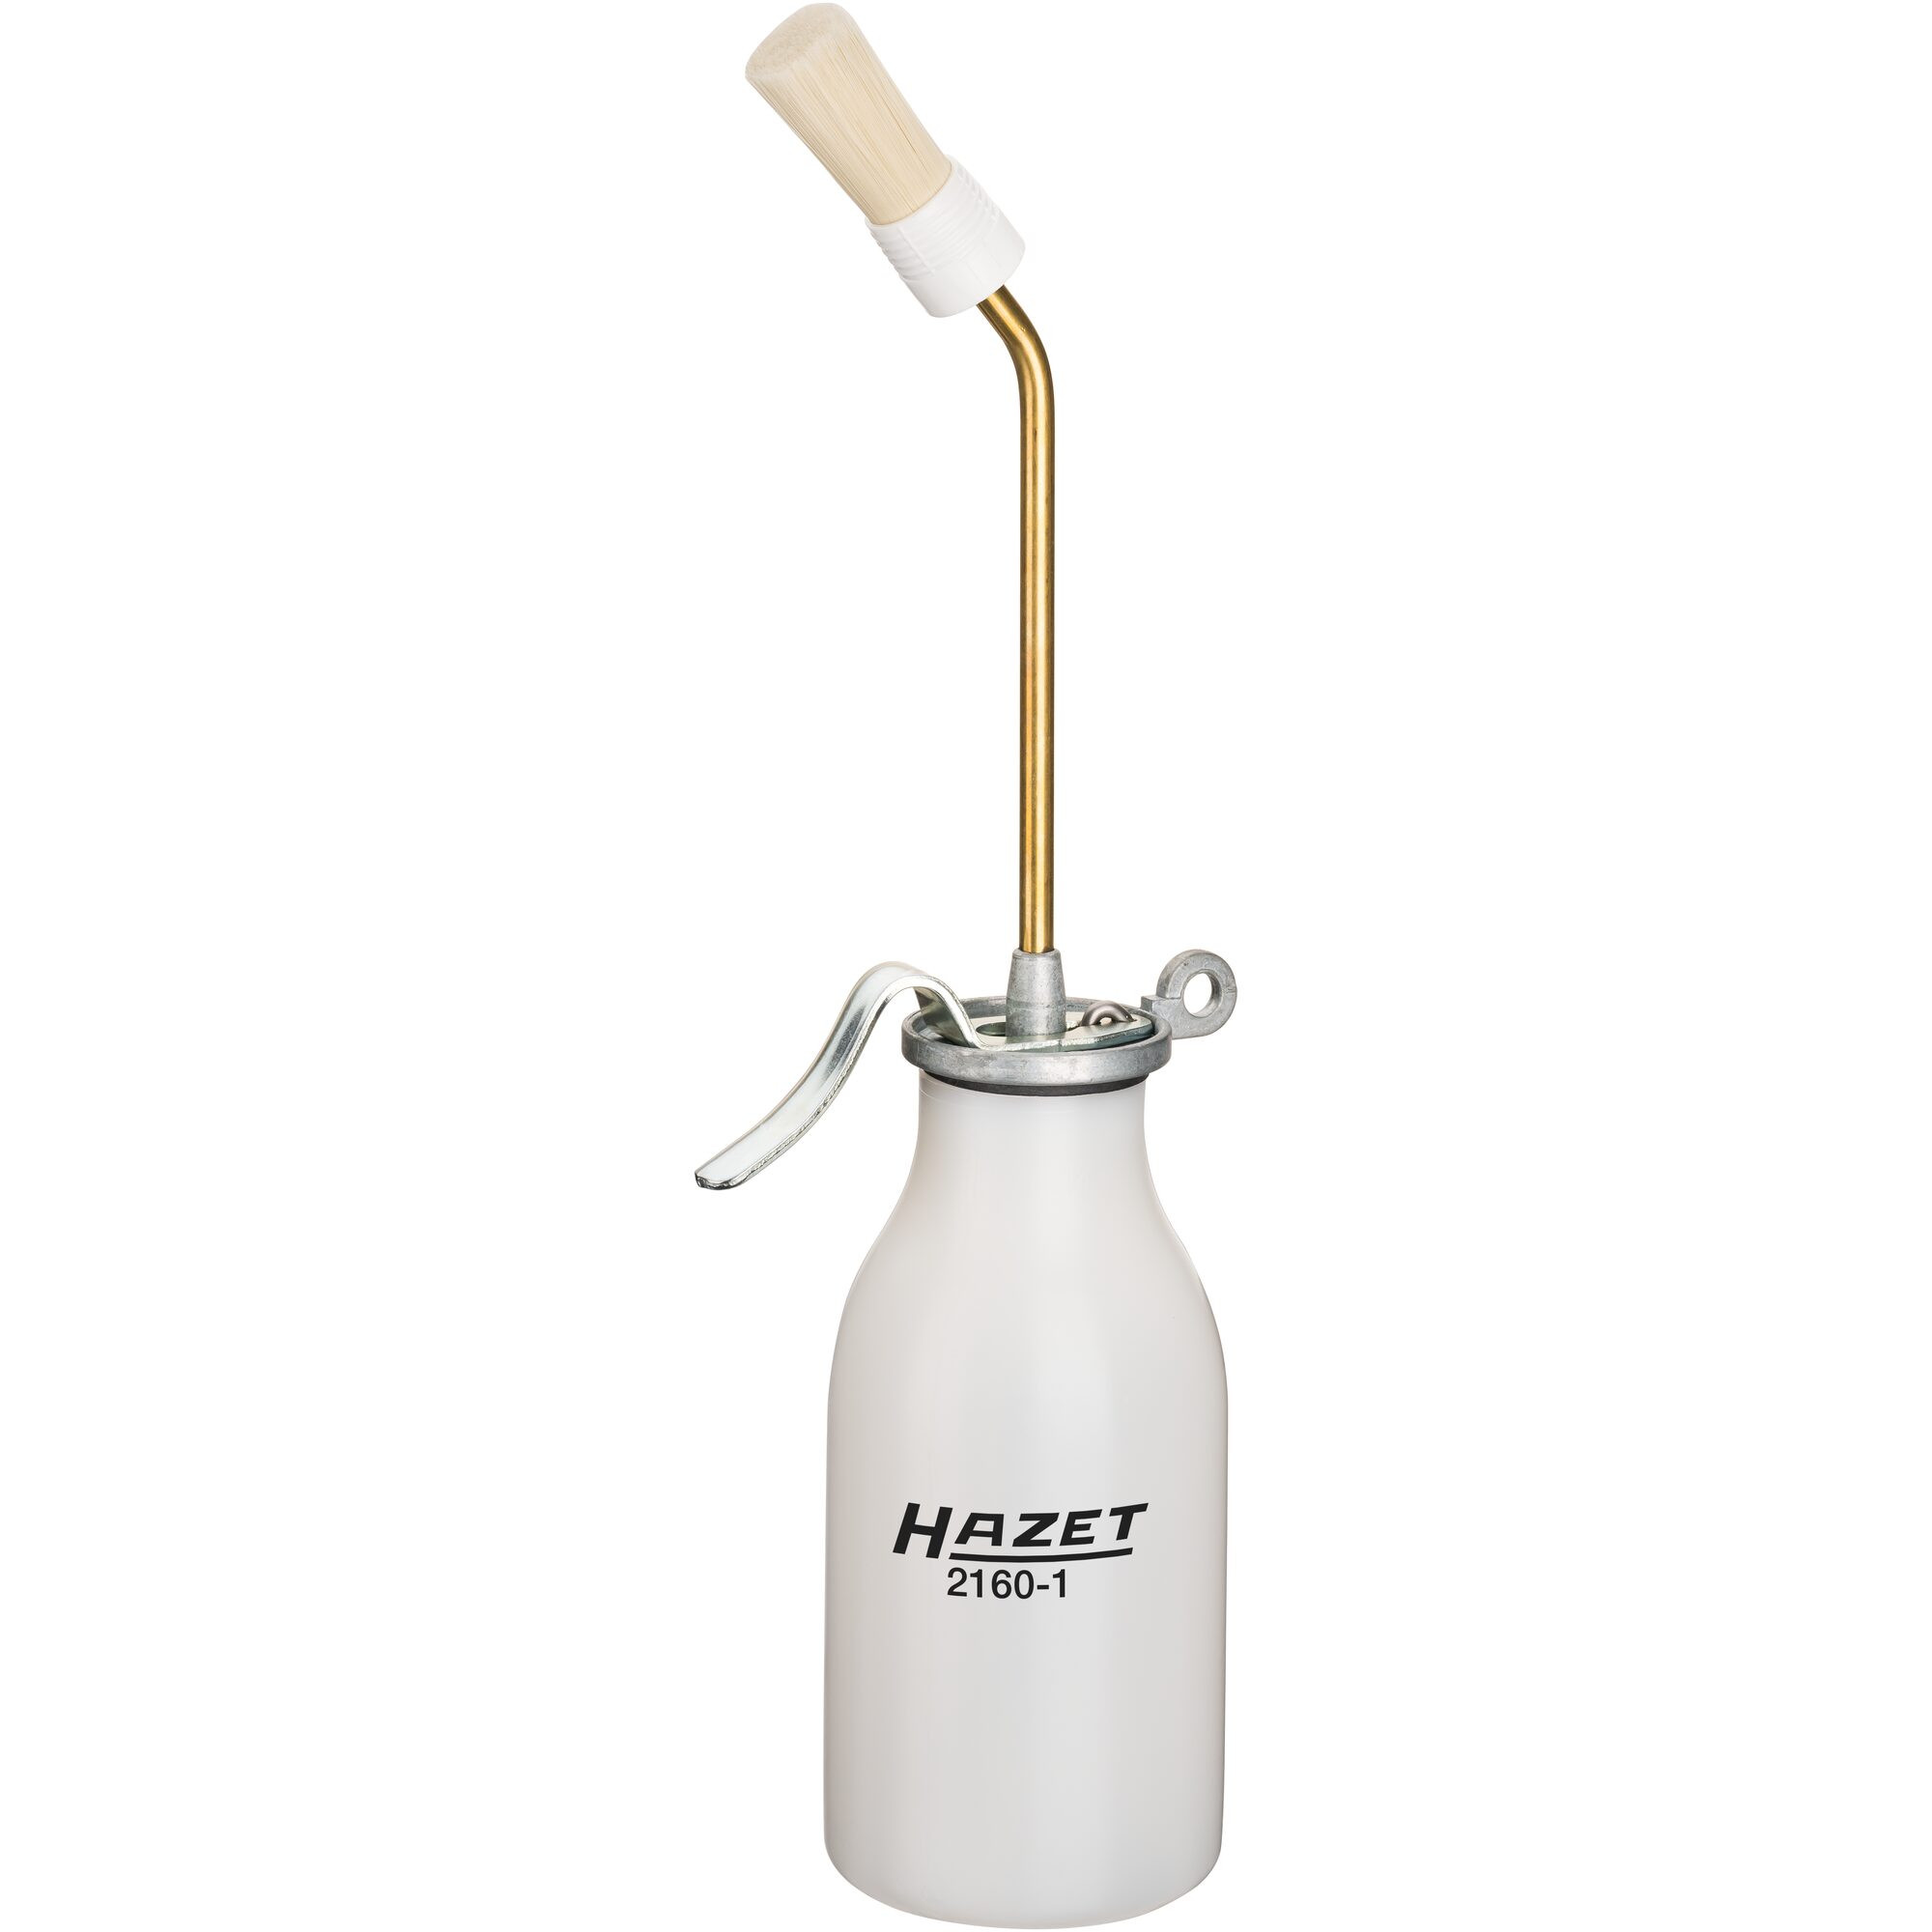 Billede af HAZET Olie pumpe 200 ml m. pensel. (2160-1)